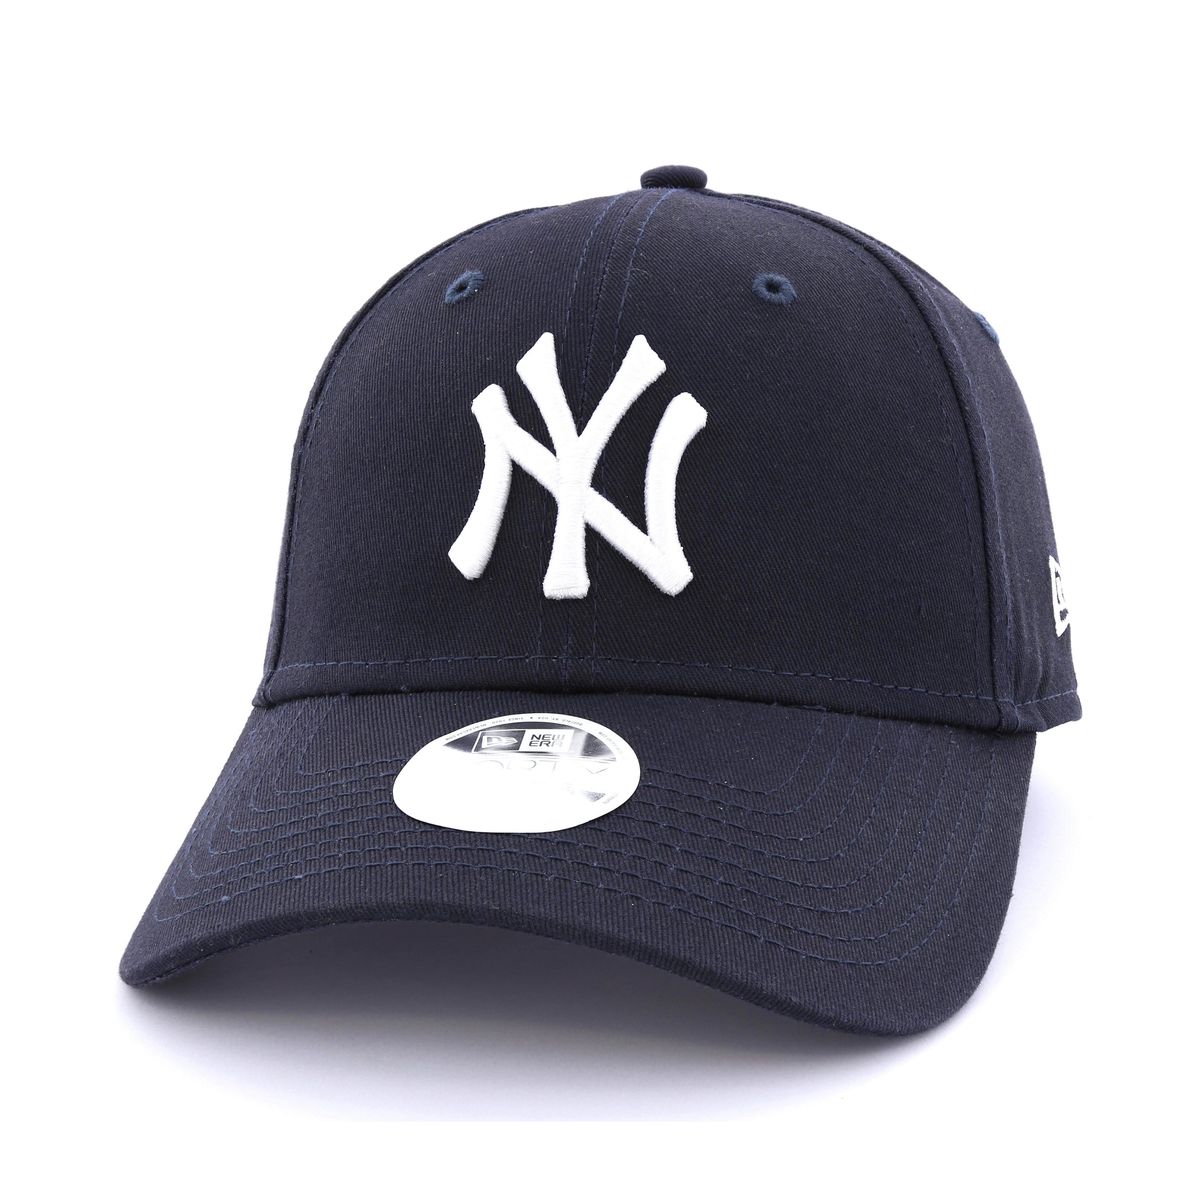 New Era League Estl New York Yankees Womens' Cap Navy/White